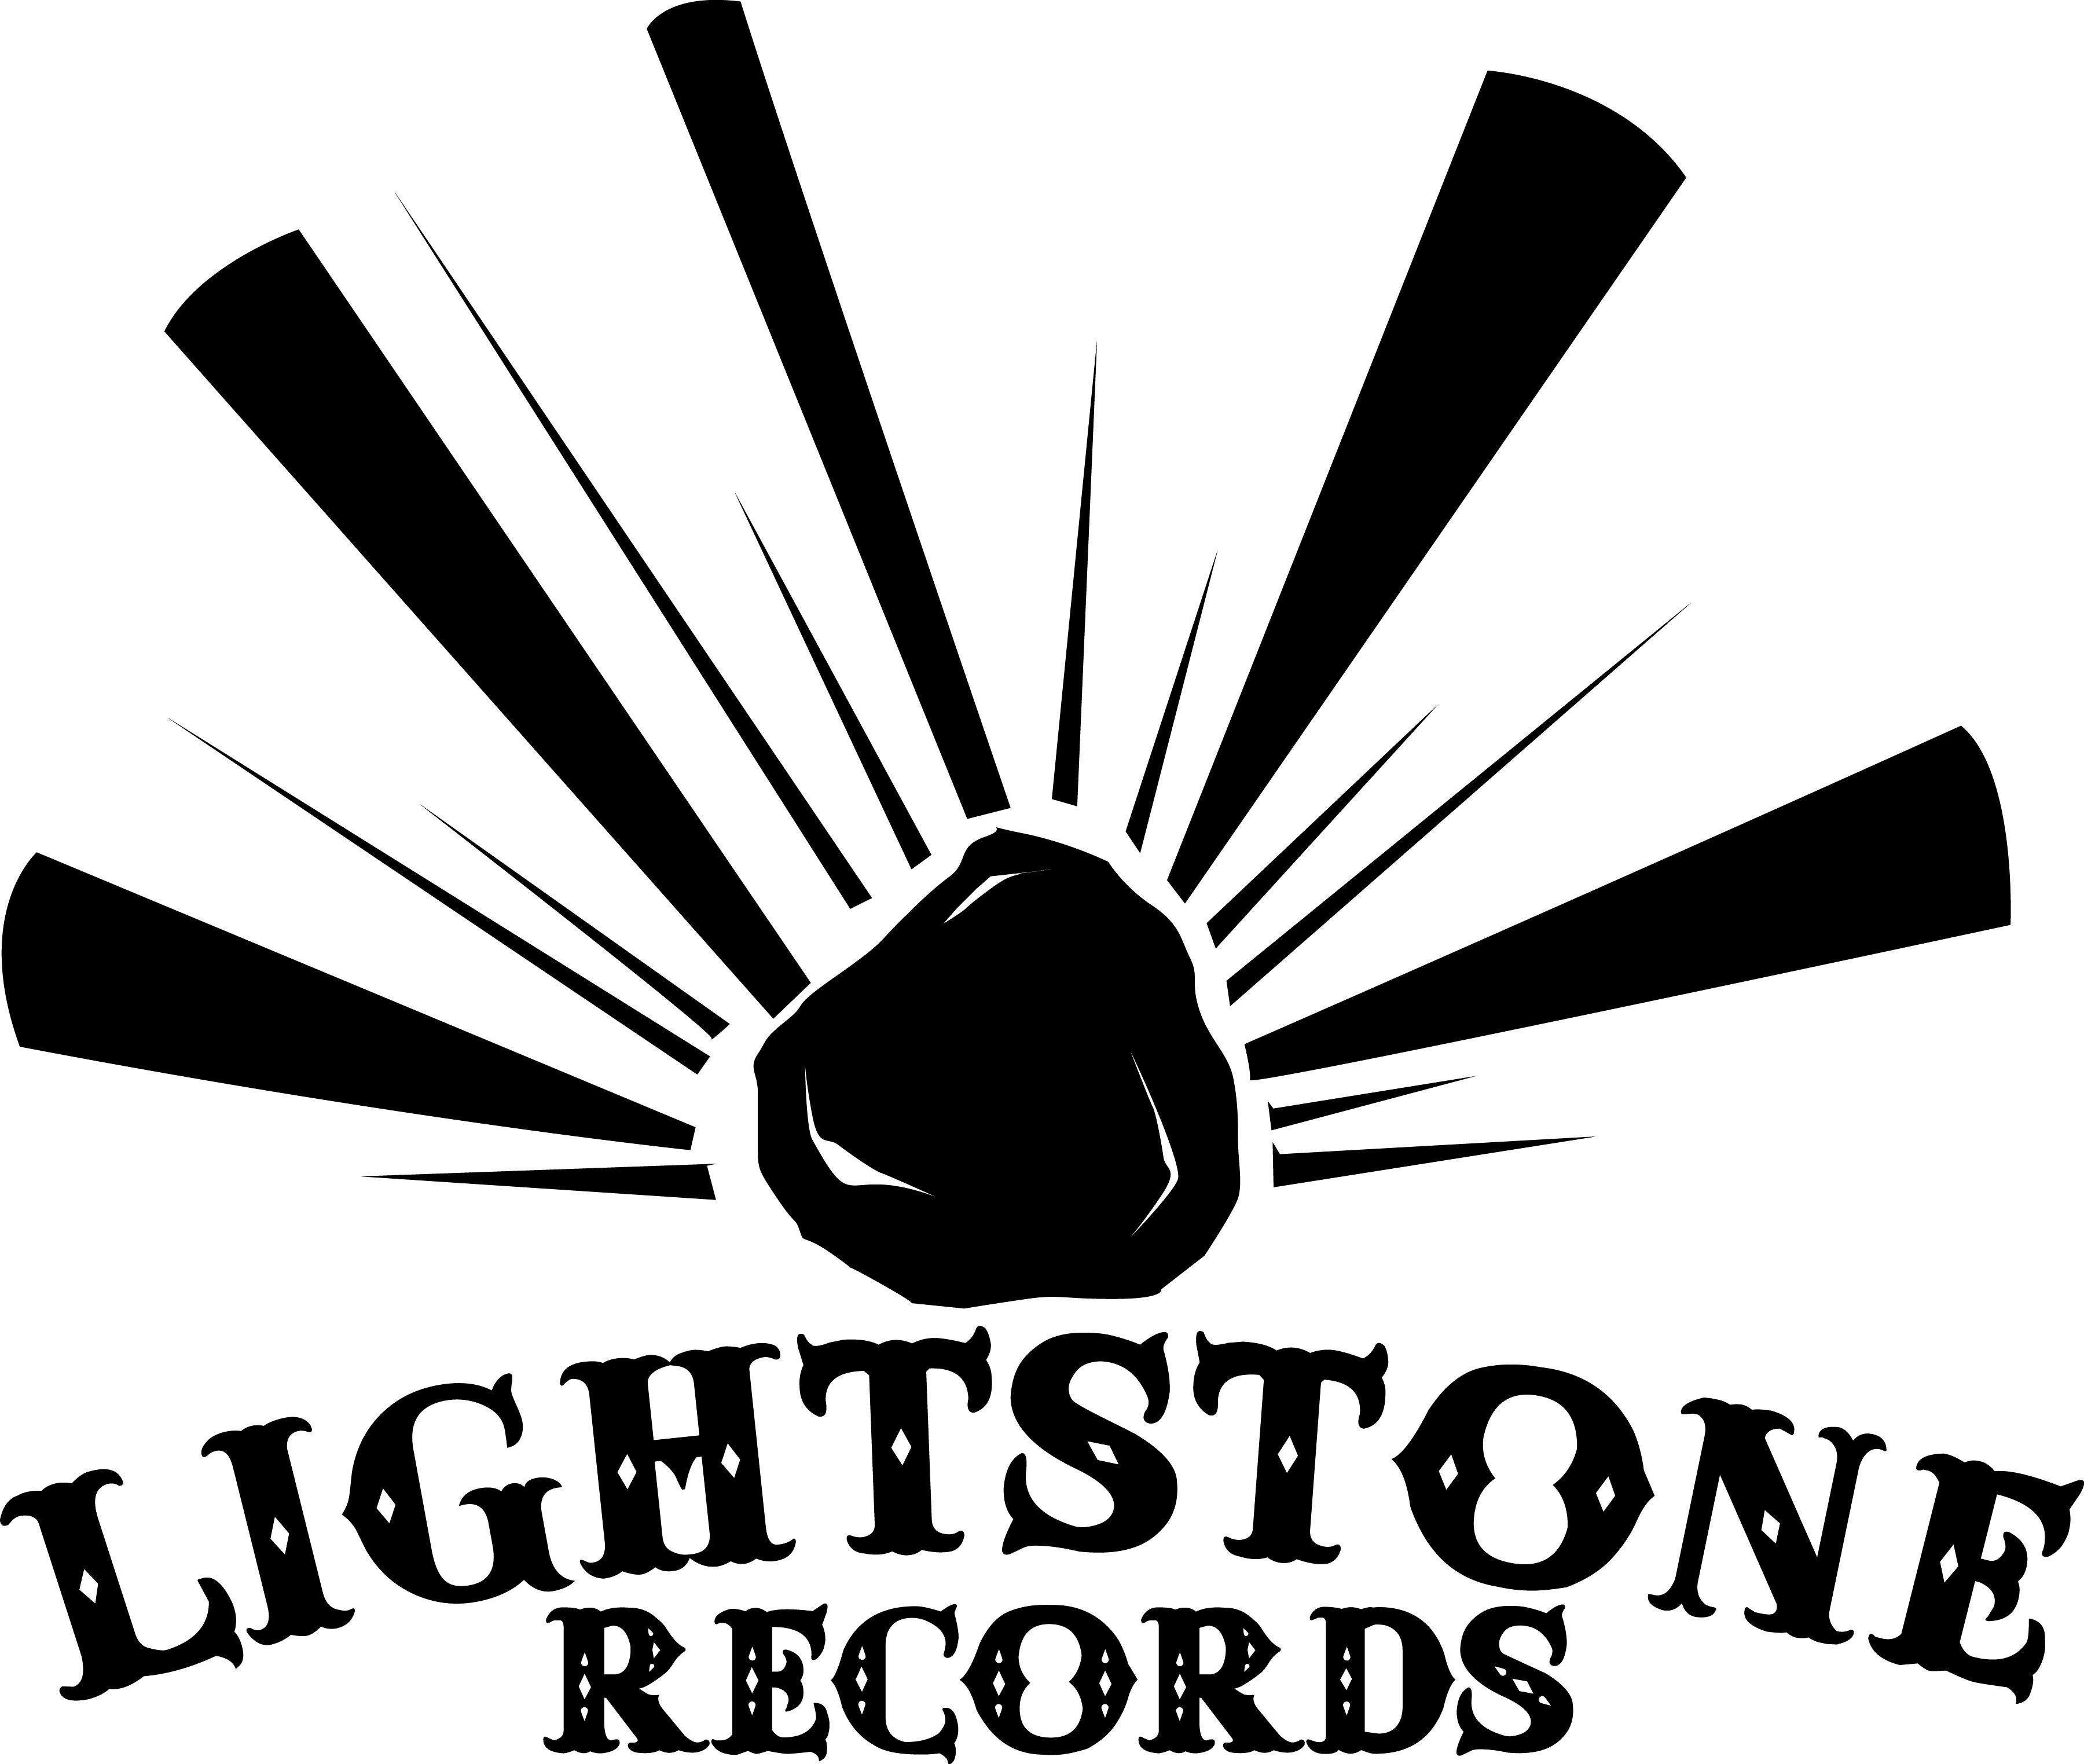 Lightstone Records